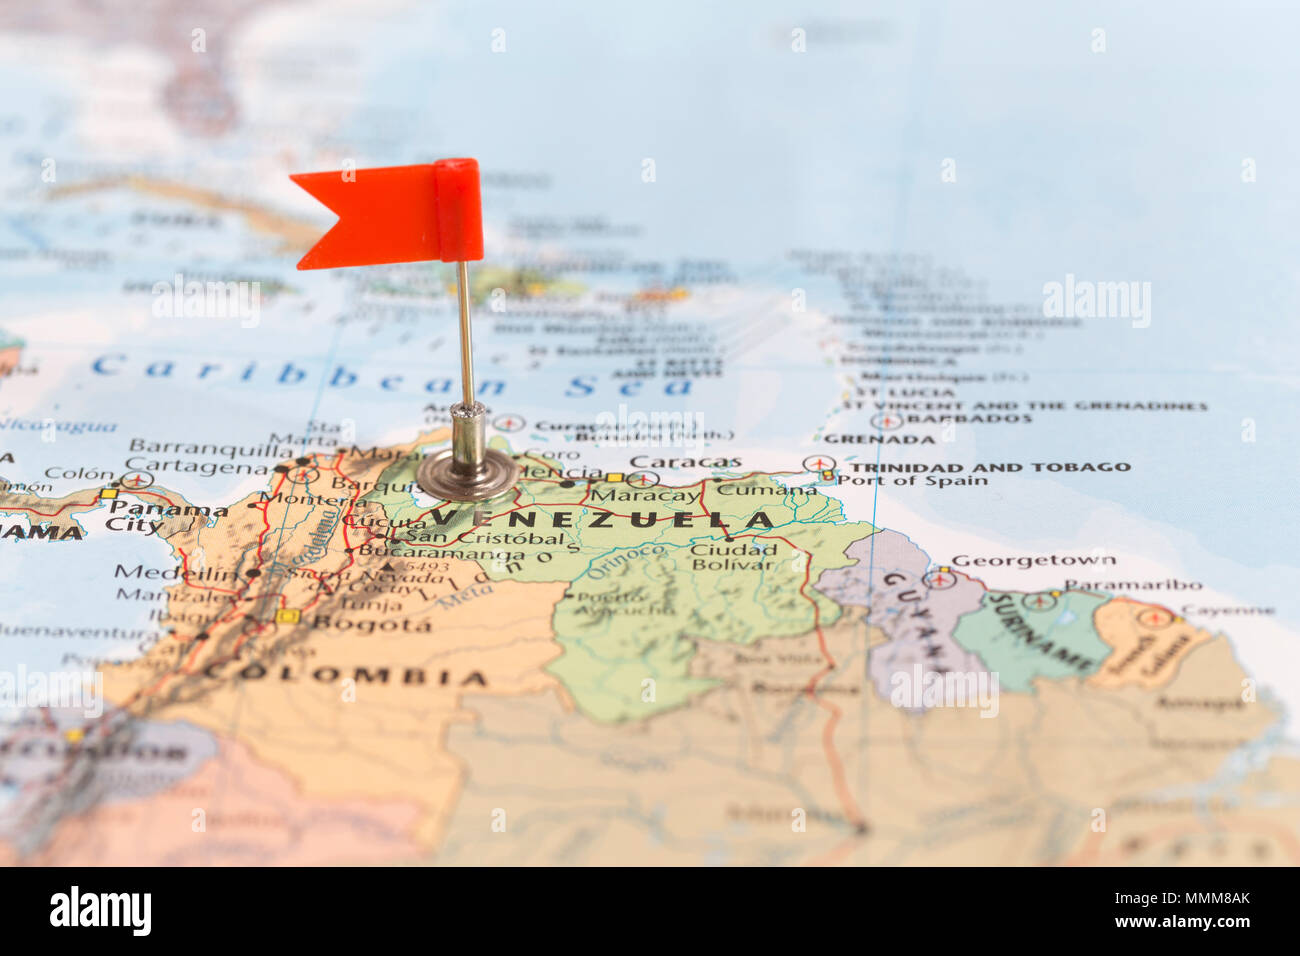 La pequeña bandera roja marcando el país sudamericano de Venezuela en un mapa del mundo. Foto de stock